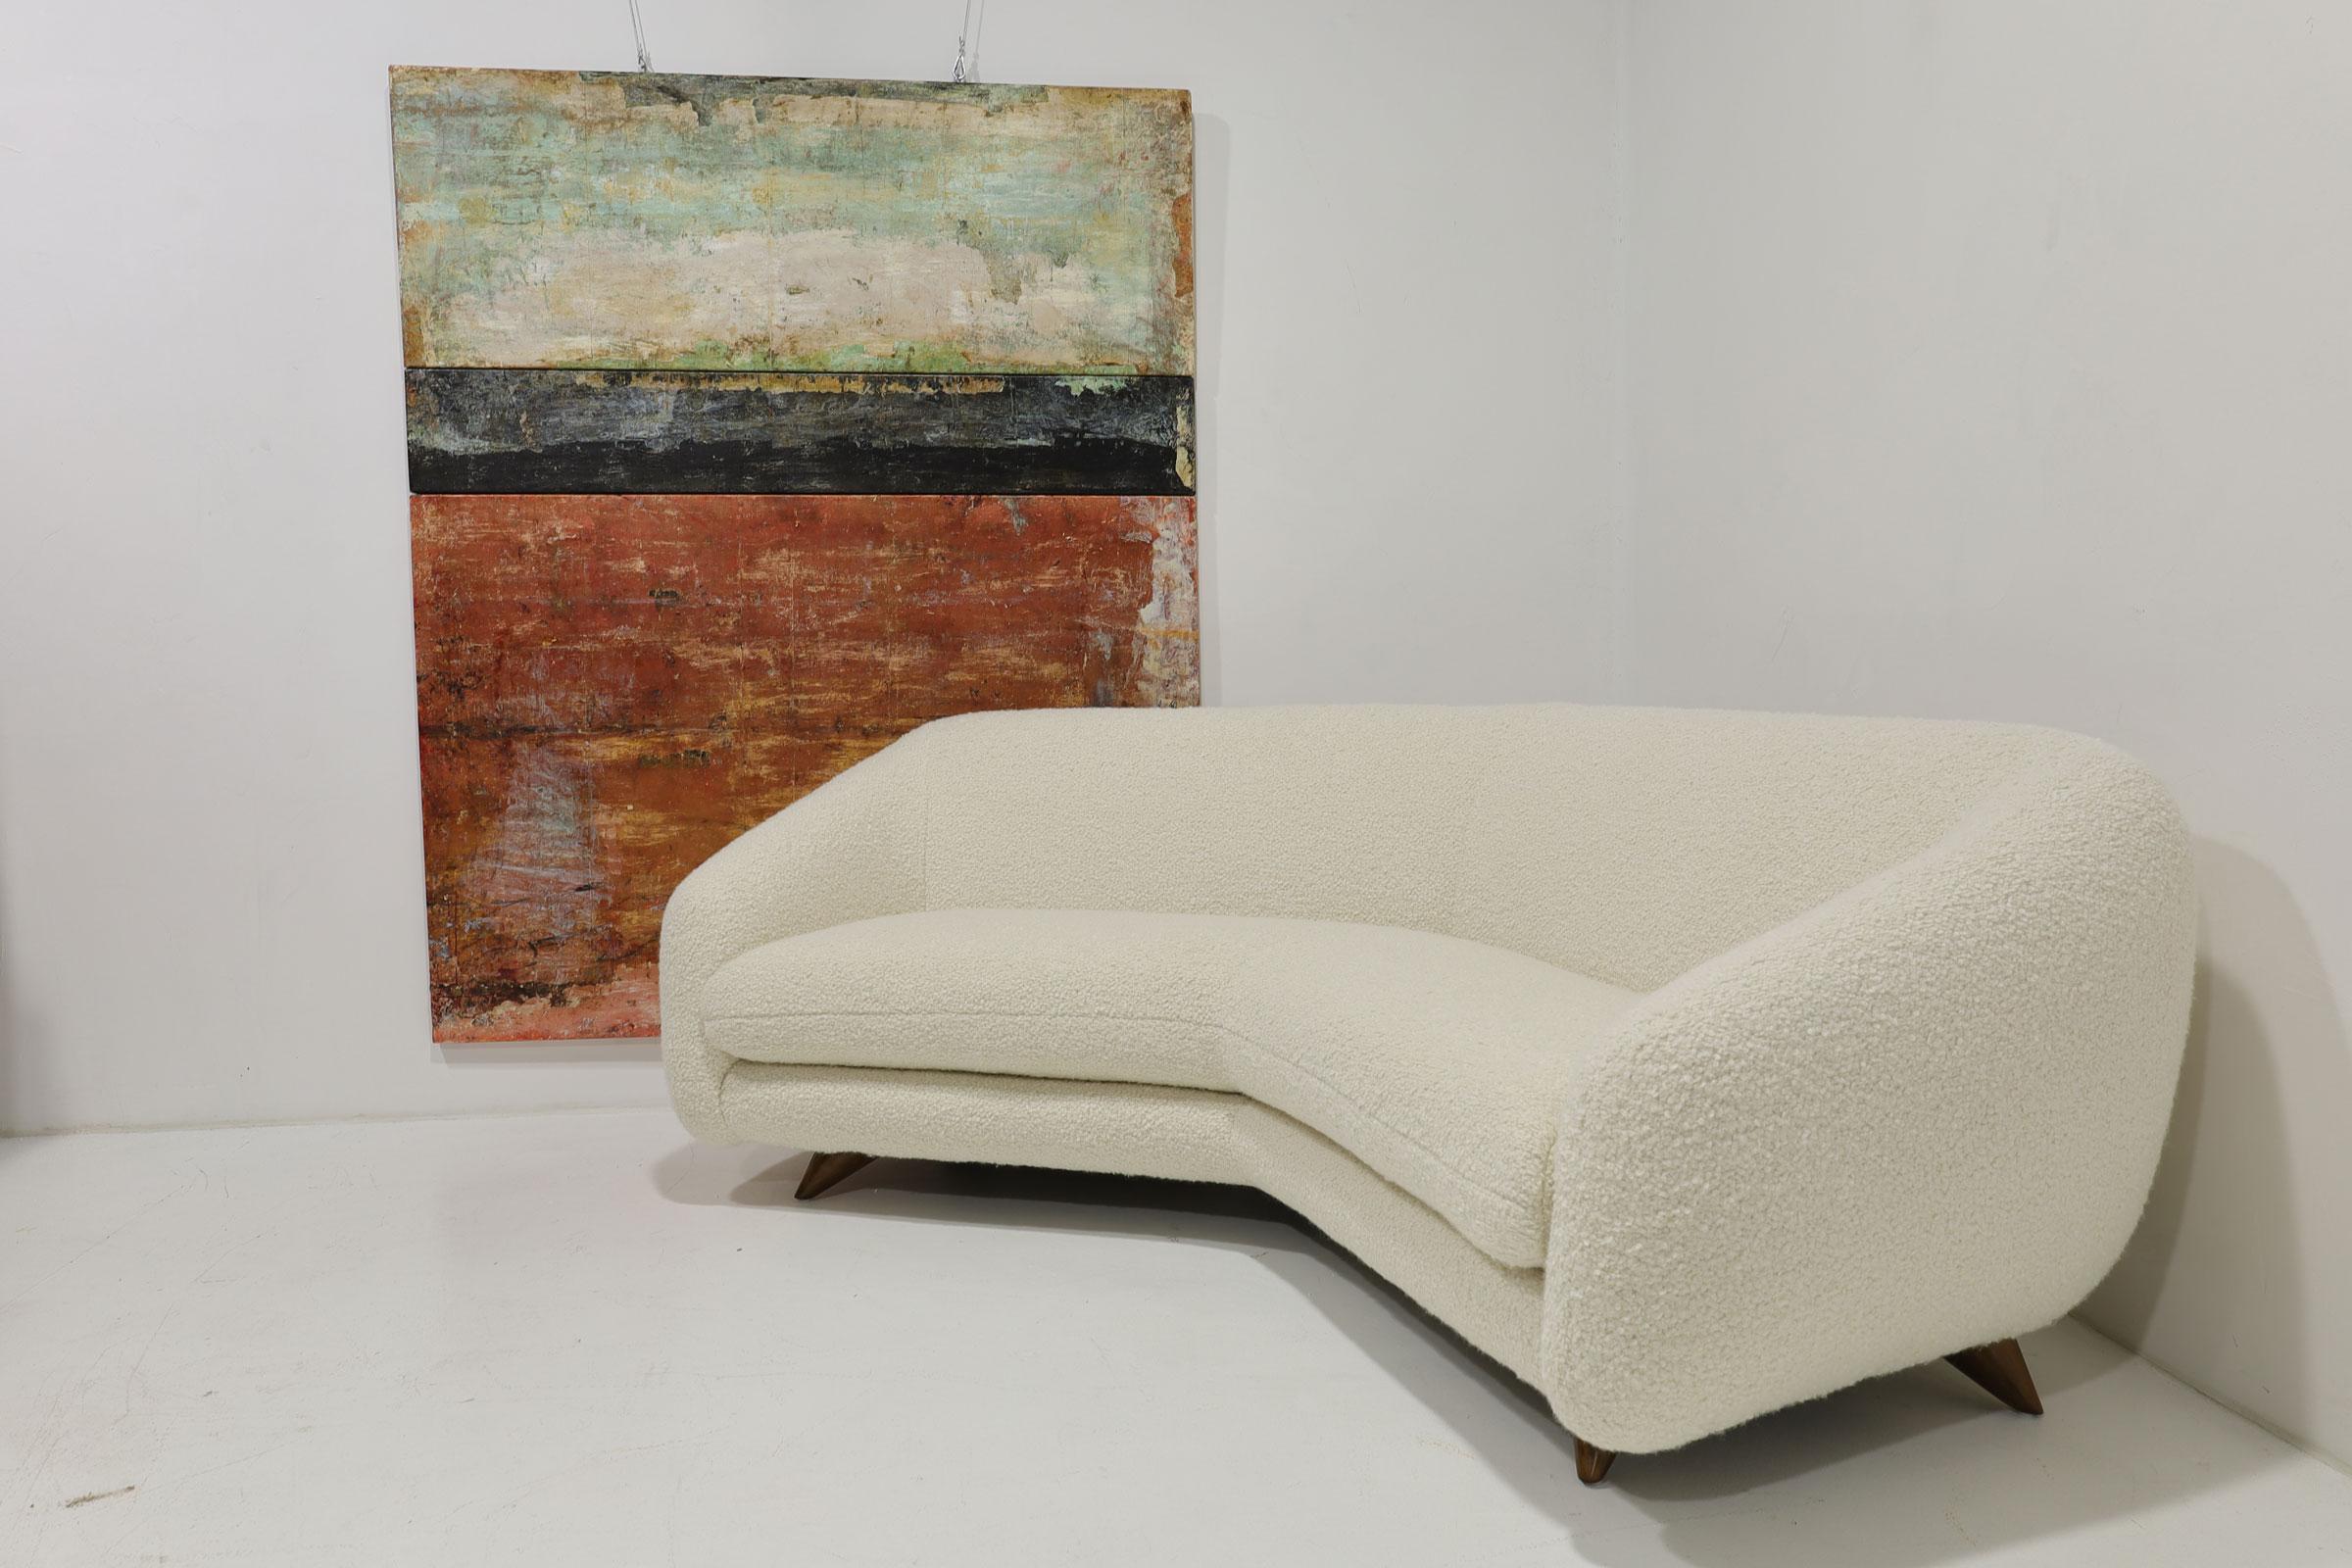 Un magnifique et confortable canapé réalisé par Vladimir Kagan pour Kagan-Dreyfuss. Parfois appelé canapé grand angle ou canapé Tangent. Nous avons une paire disponible dans une annonce séparée. Les canapés sont retapissés en HOLLY HUNT. Le(s)